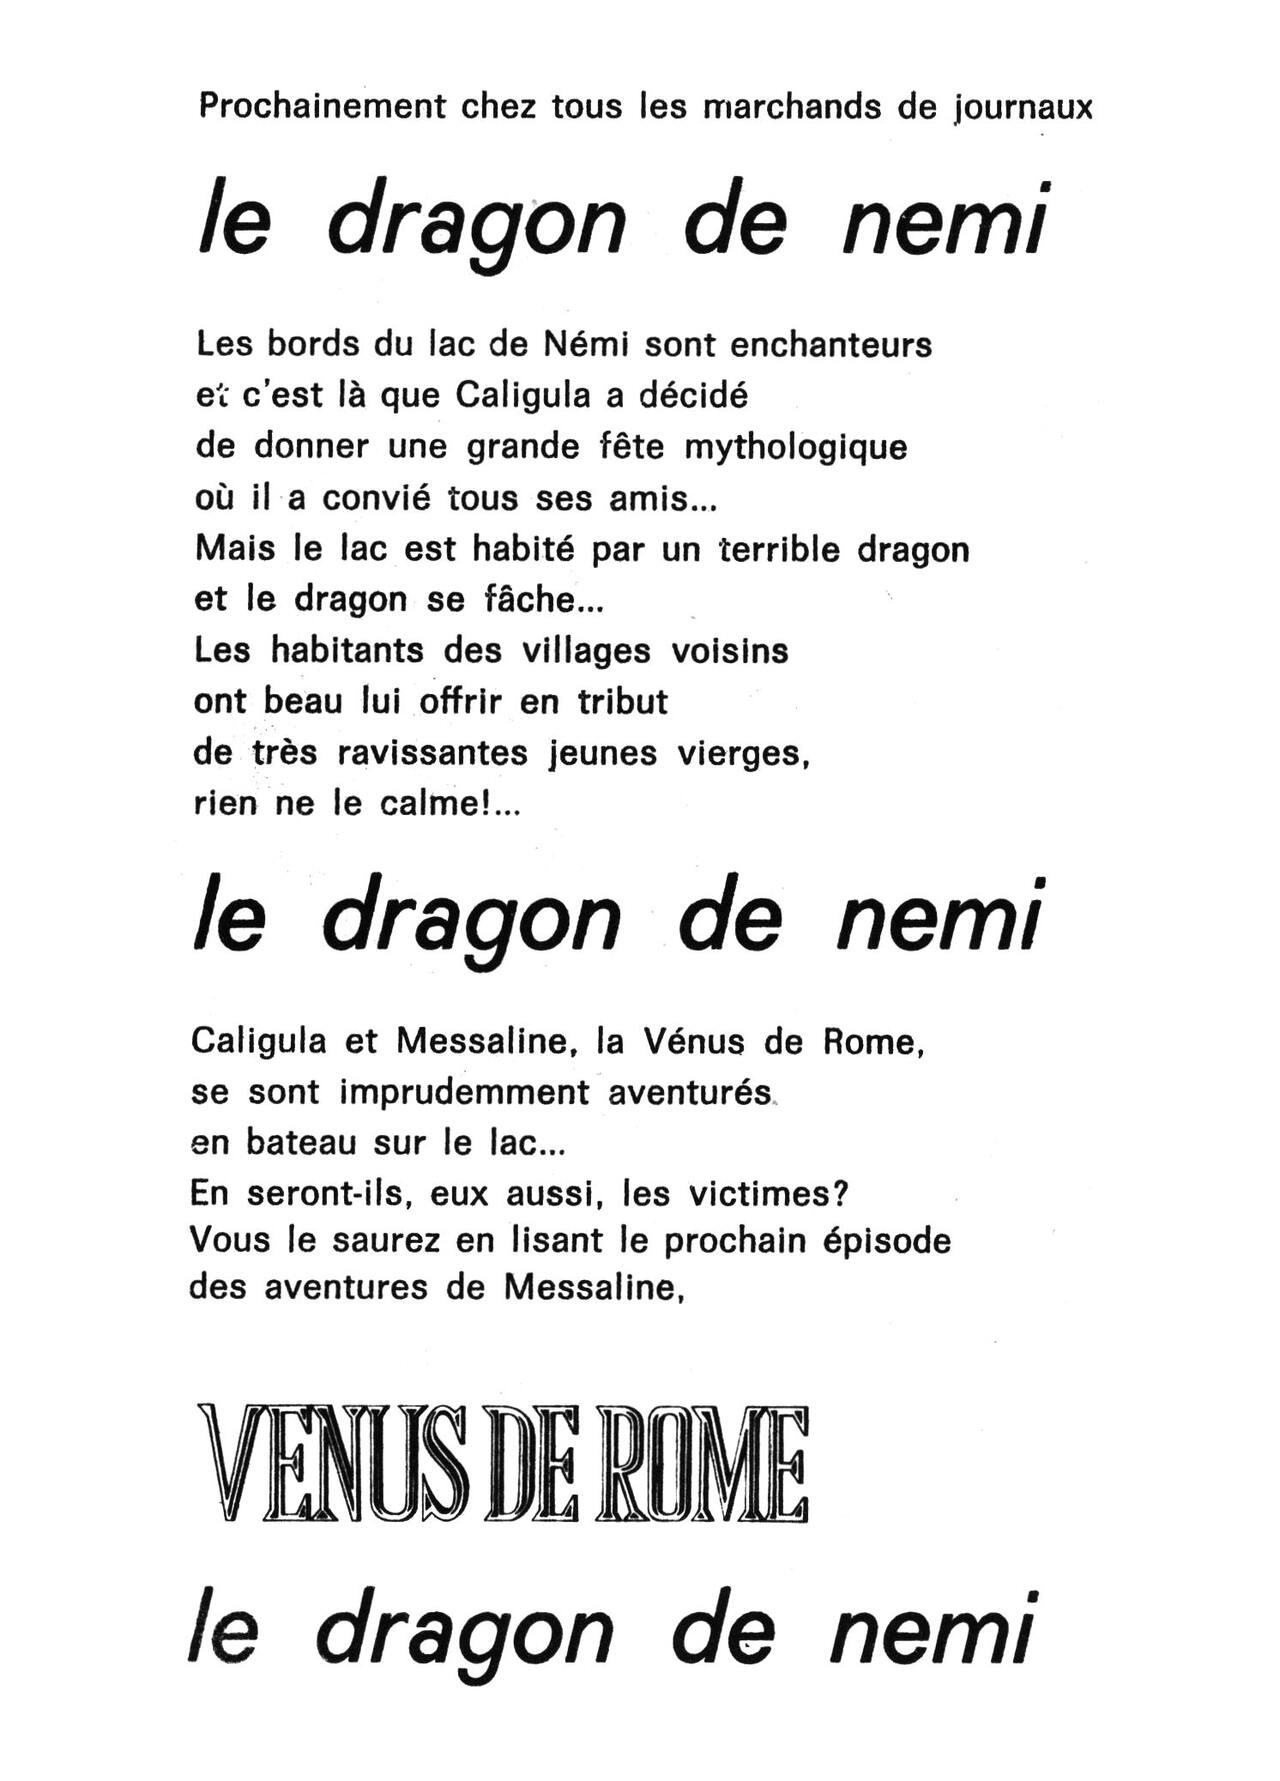 Venus de Rome 002 - La ceinture de chasteté [French] [PJP] 123